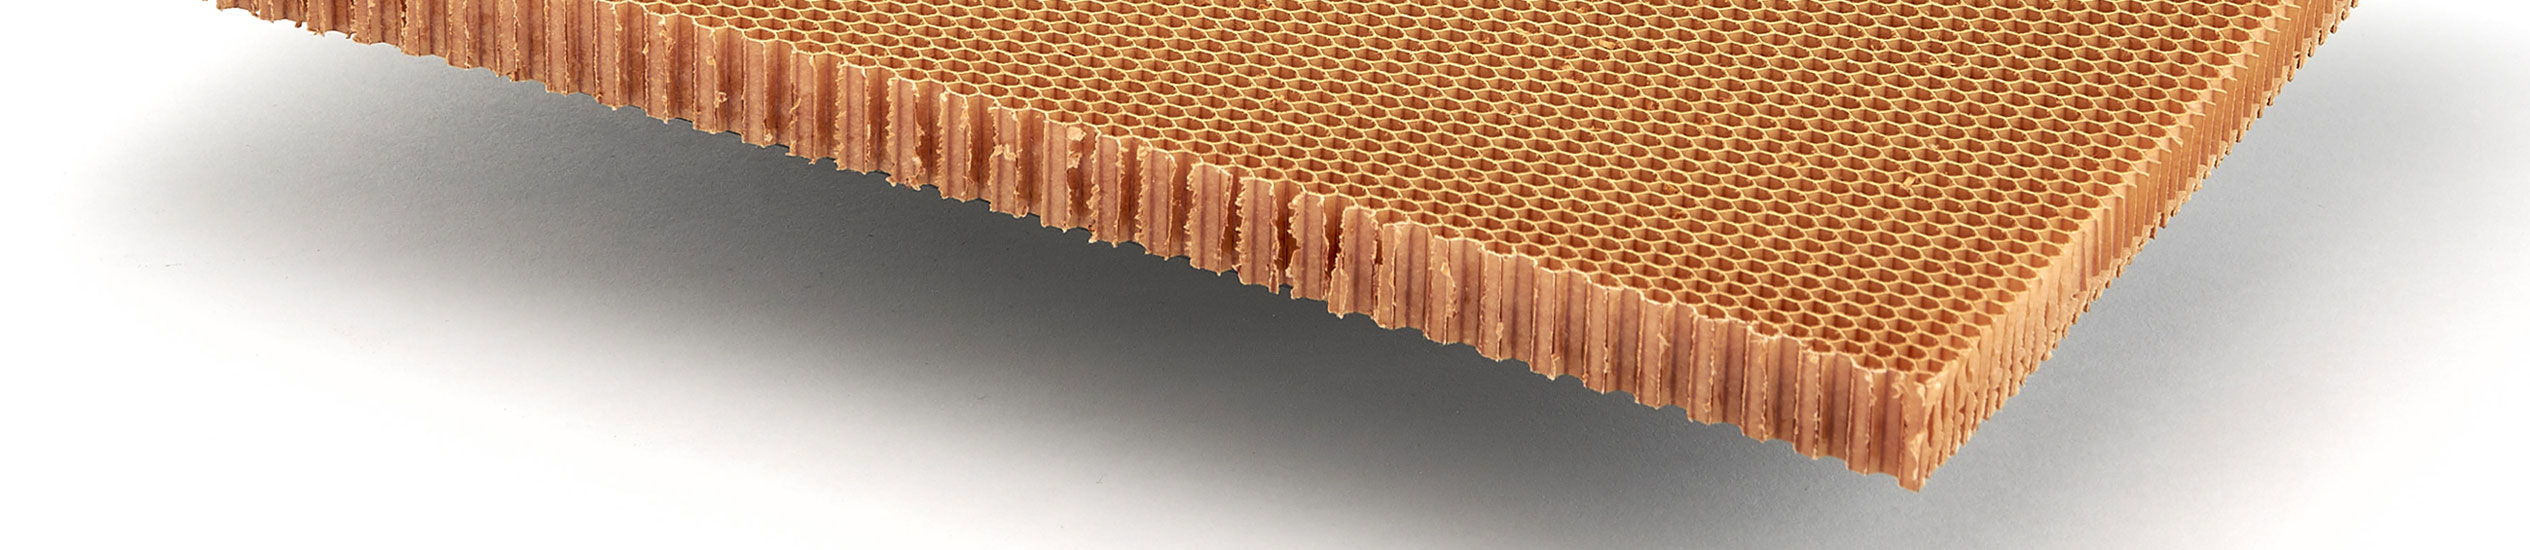 Il nido d'ape in Nomex® è un prodotto non metallico, leggero e resistente realizzato con carta aramidica. È usato nel settore navale, ferroviario e aeronautico.